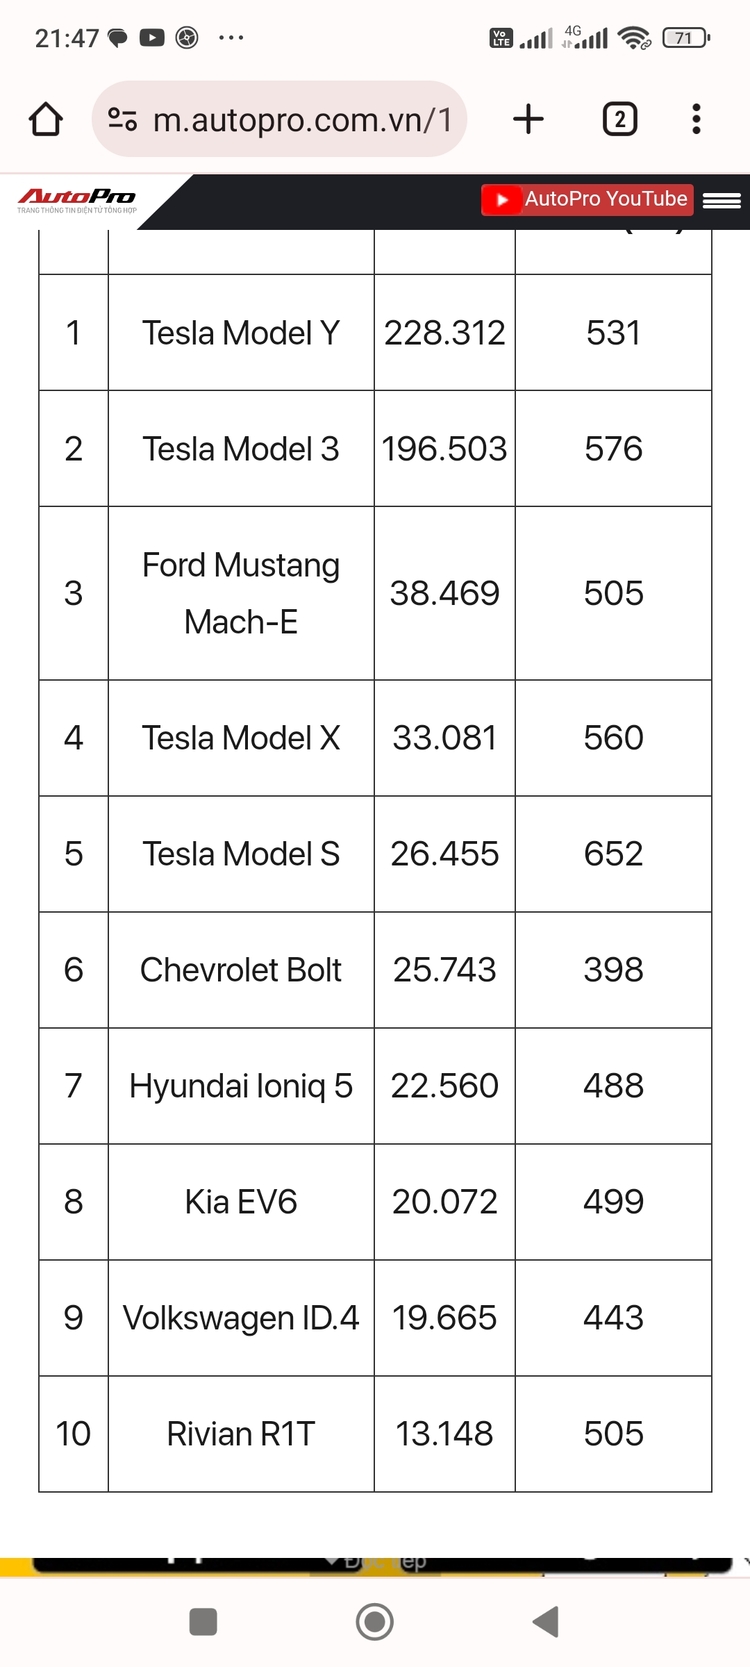 Hyundai, Genesis, Kia bất ngờ tuyên bố chuyển sang sử dụng chuẩn sạc của Tesla từ năm 2024